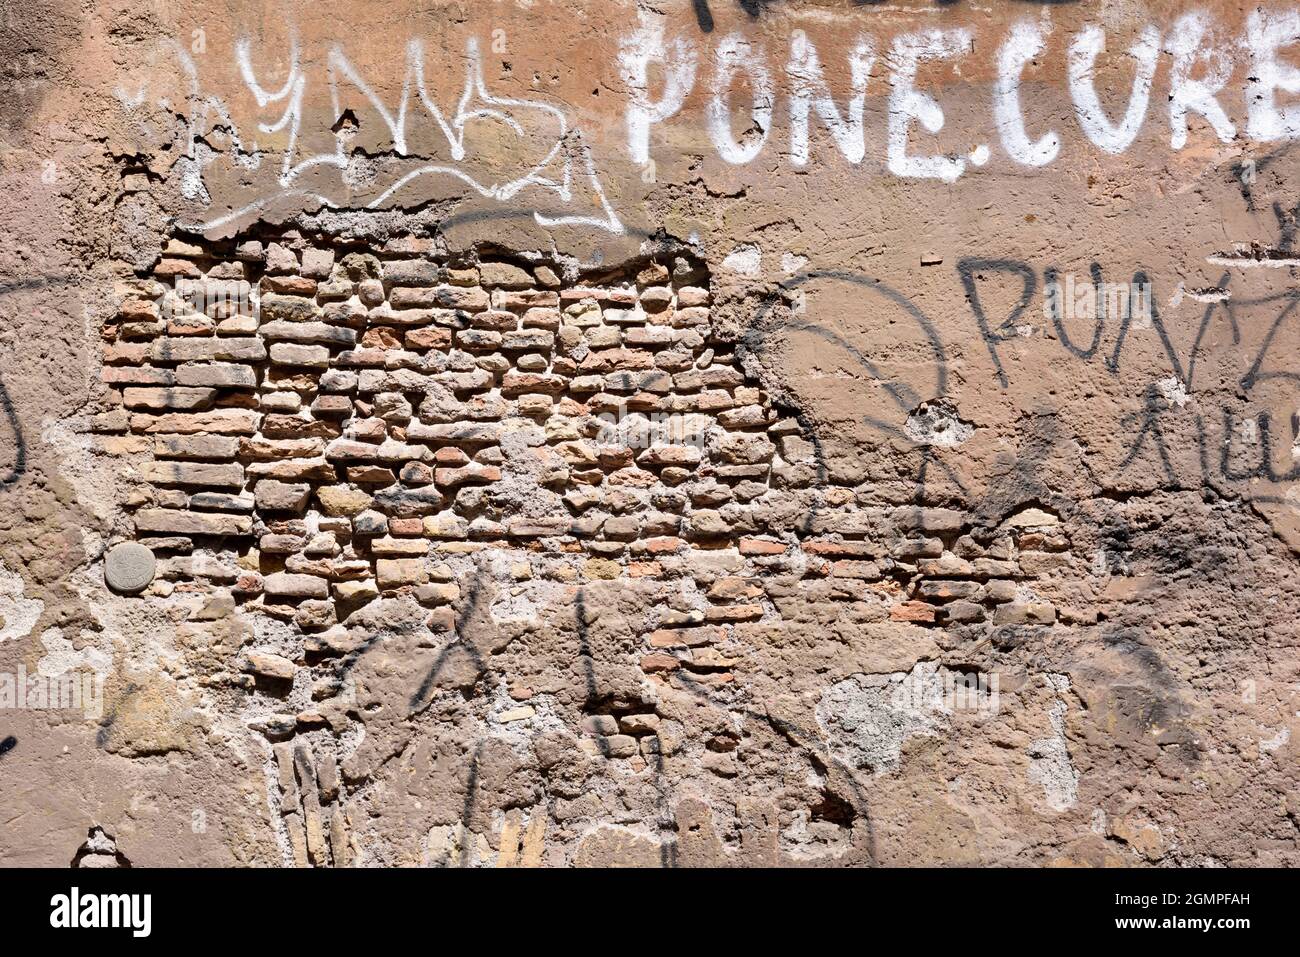 Italy, Rome, Trastevere, brick wall and graffiti Stock Photo